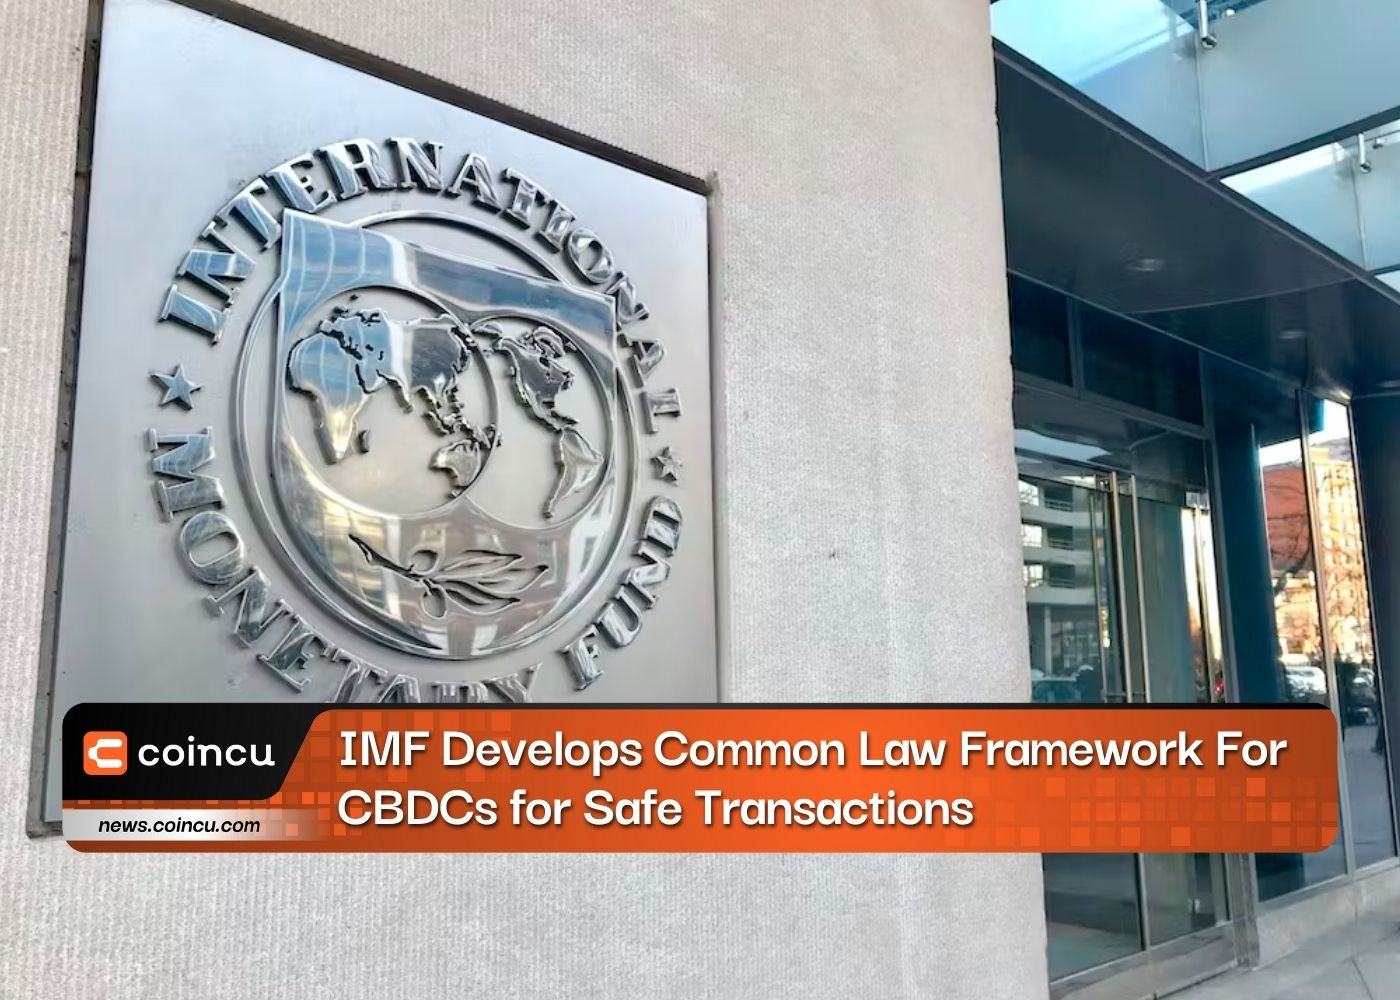 يقوم صندوق النقد الدولي بتطوير إطار عمل للقانون العام للعملات الرقمية للبنوك المركزية من أجل المعاملات الآمنة